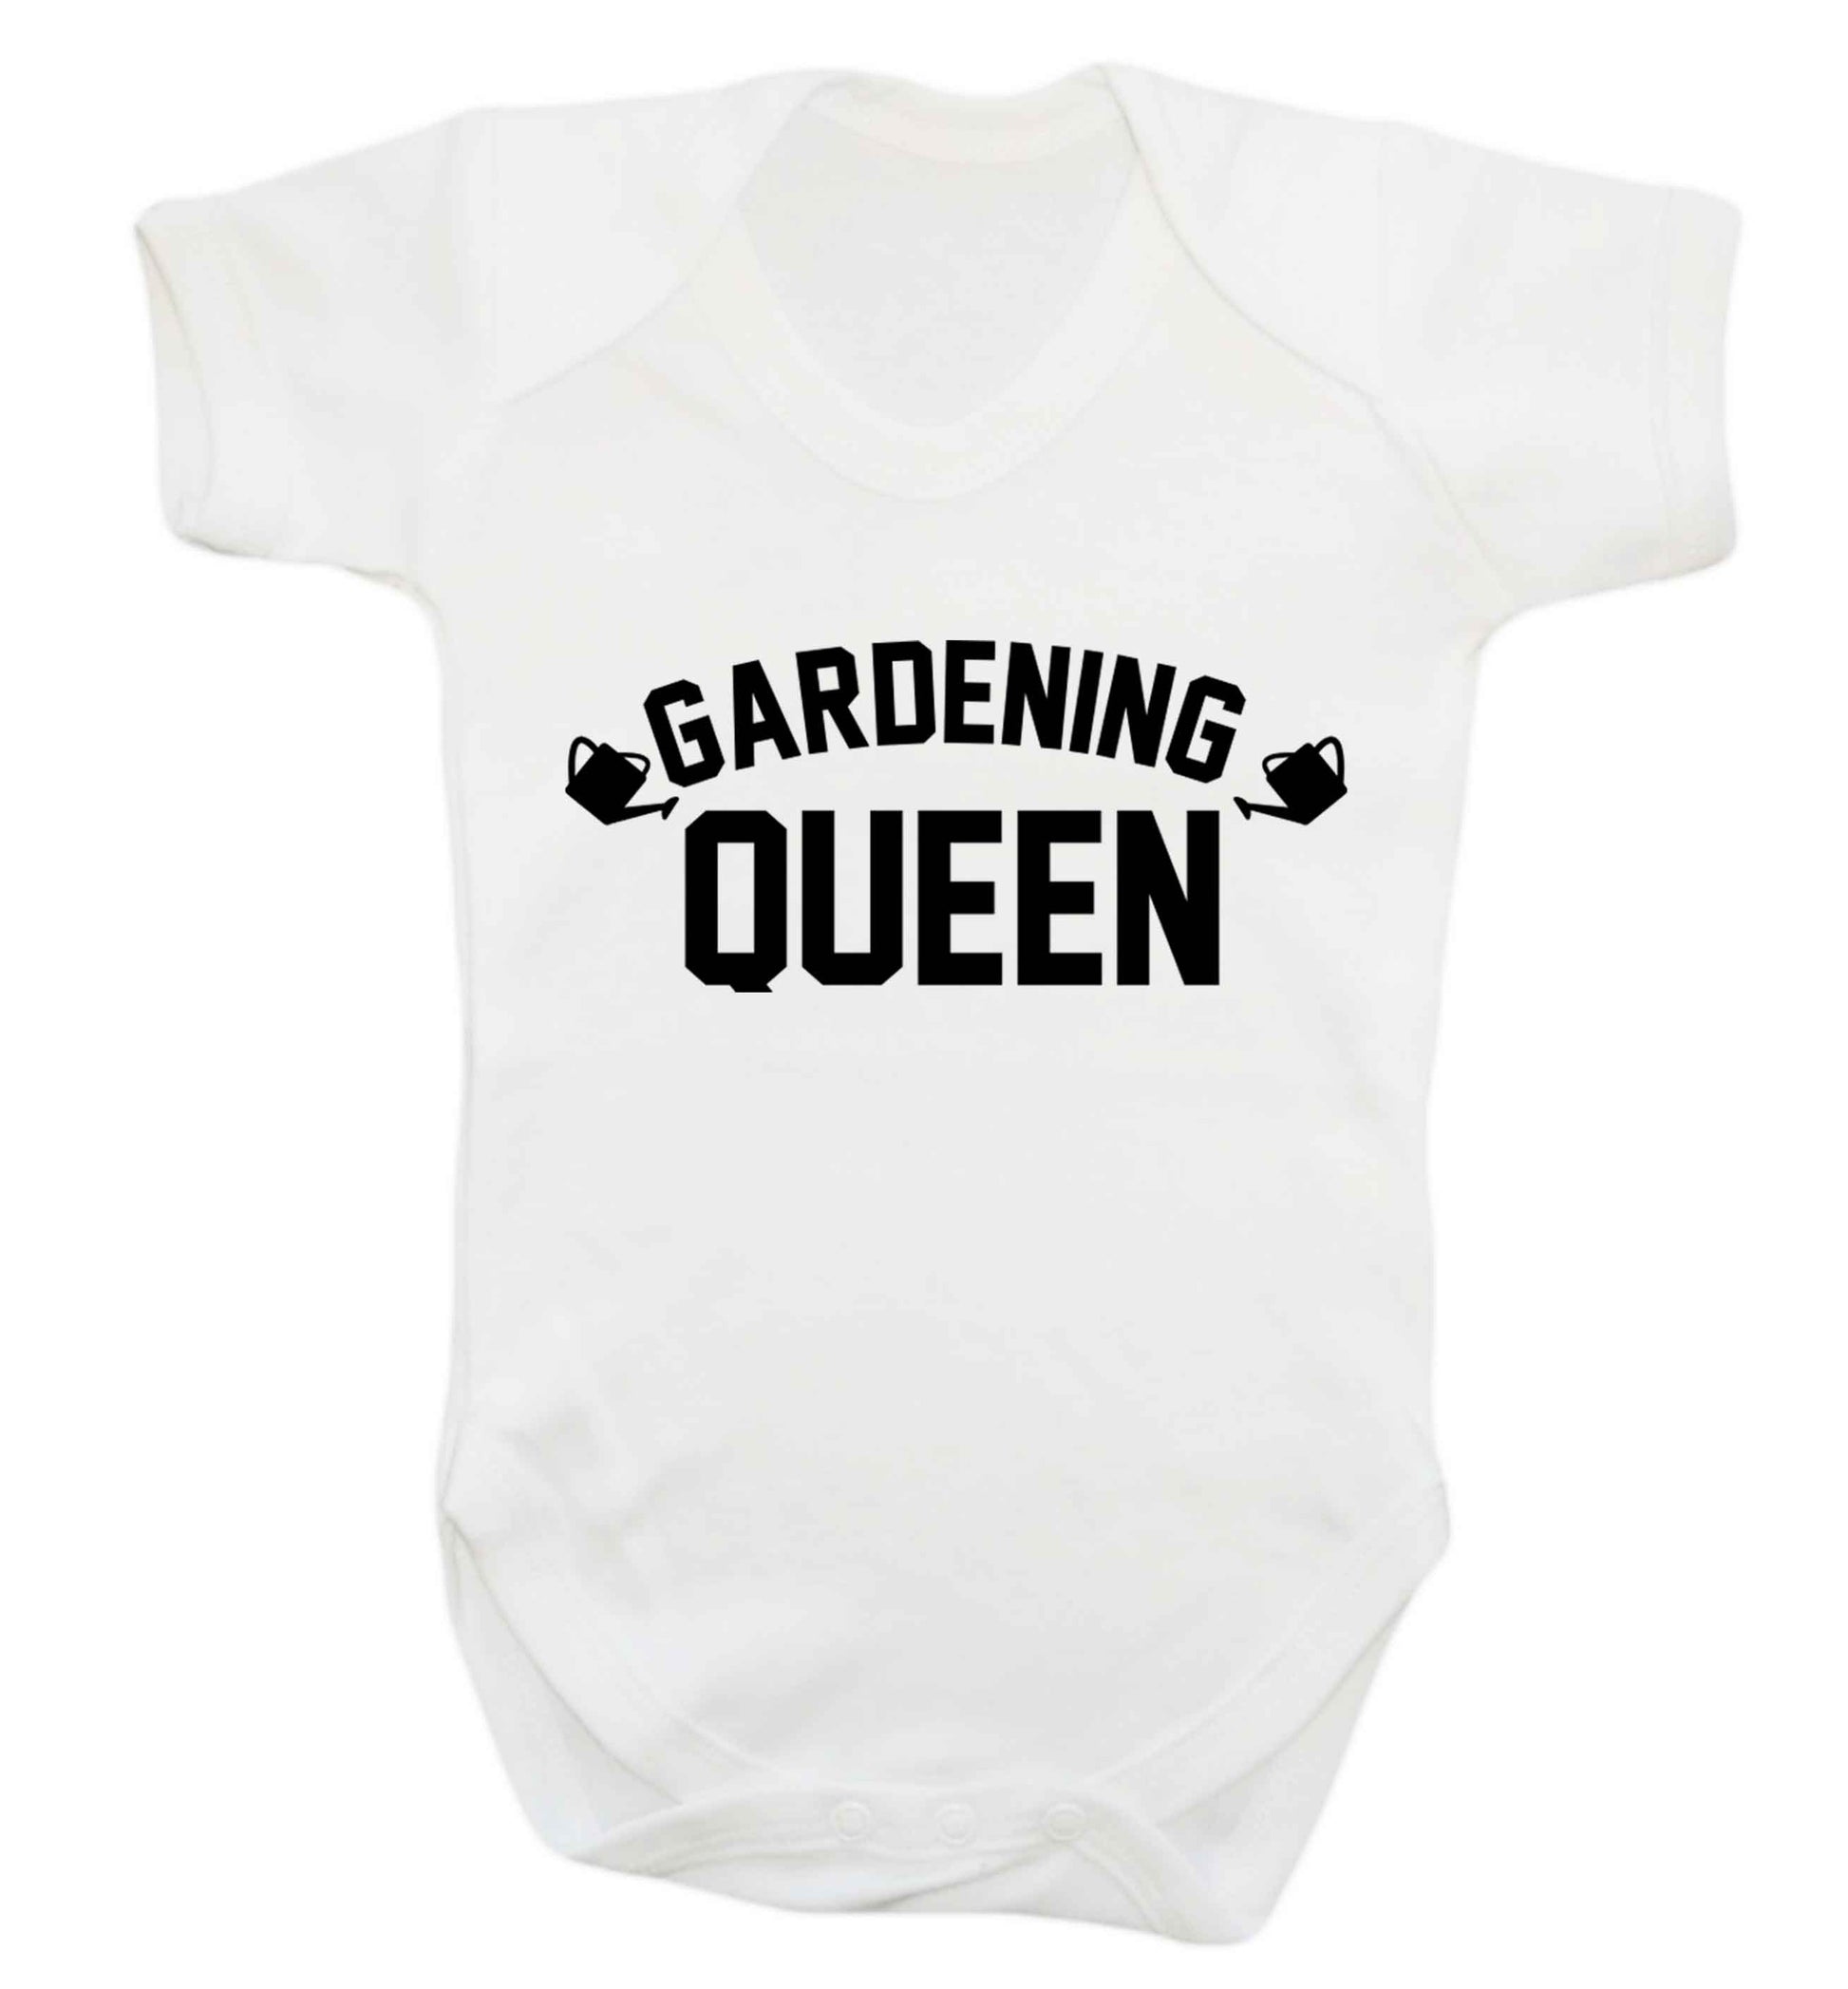 Gardening queen Baby Vest white 18-24 months